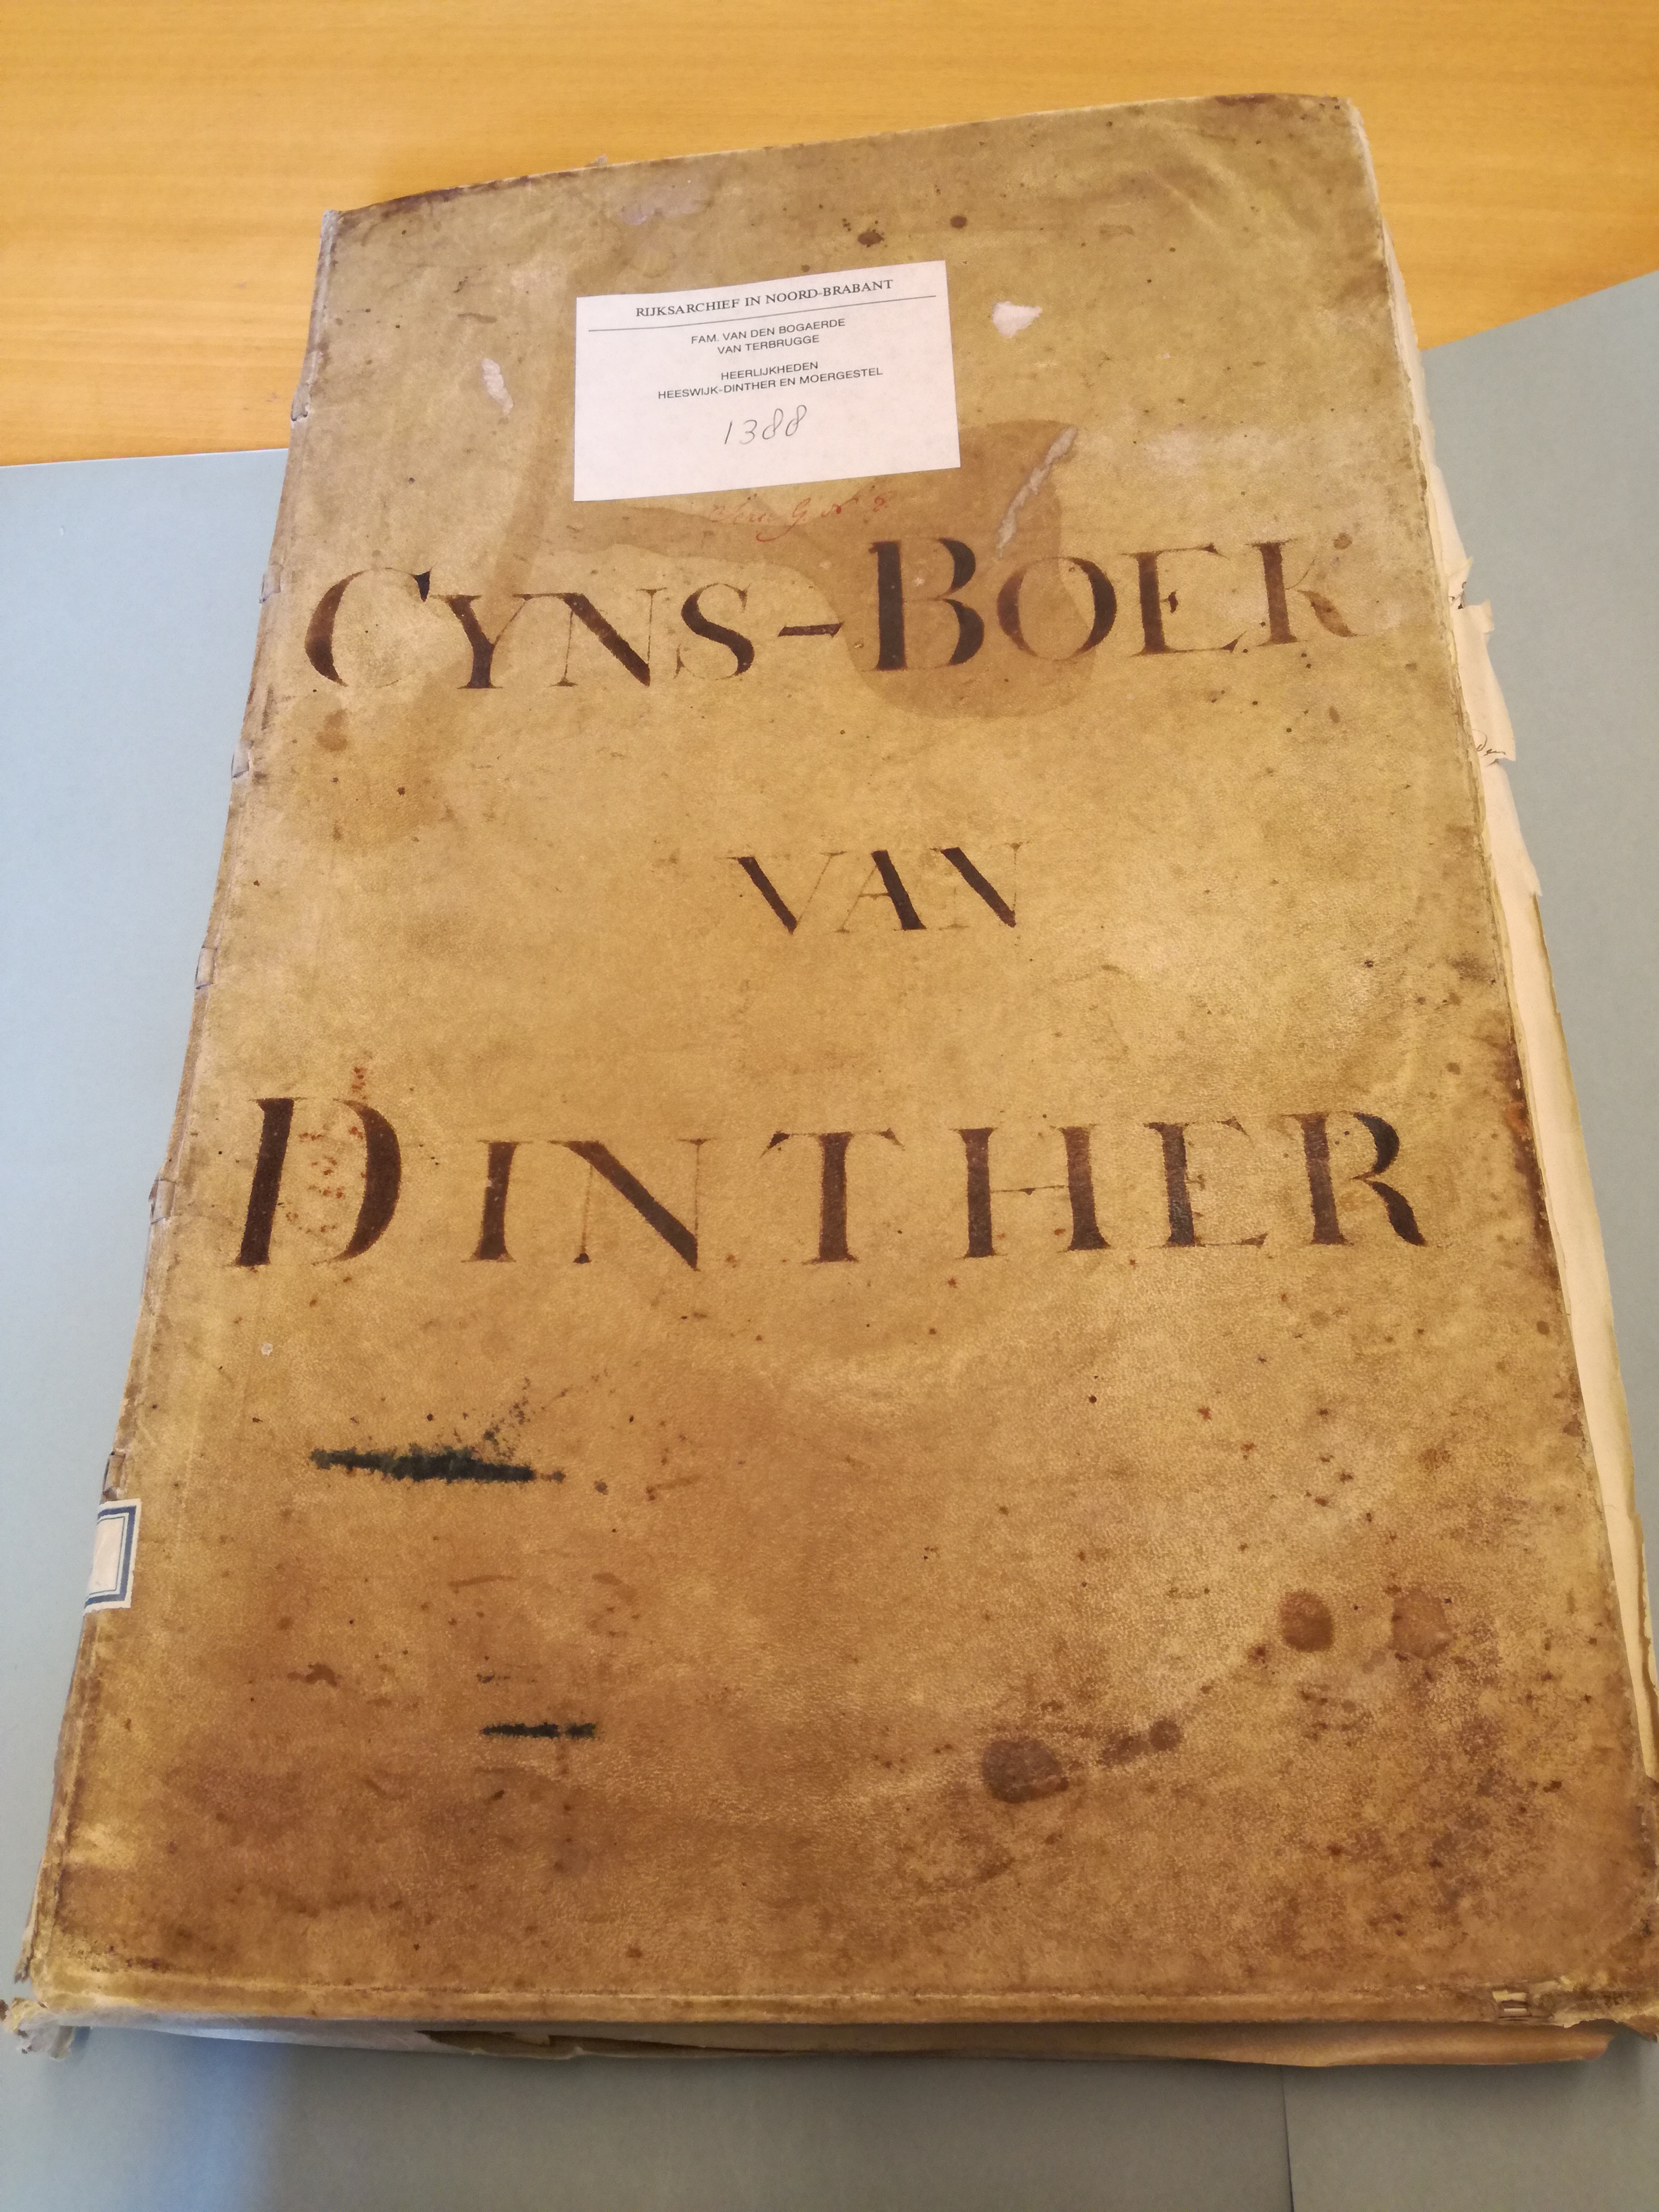 Cijnsboek van de heer Van Dinther, 1760-1834 (toegang 314, inventarisnummer 1388)